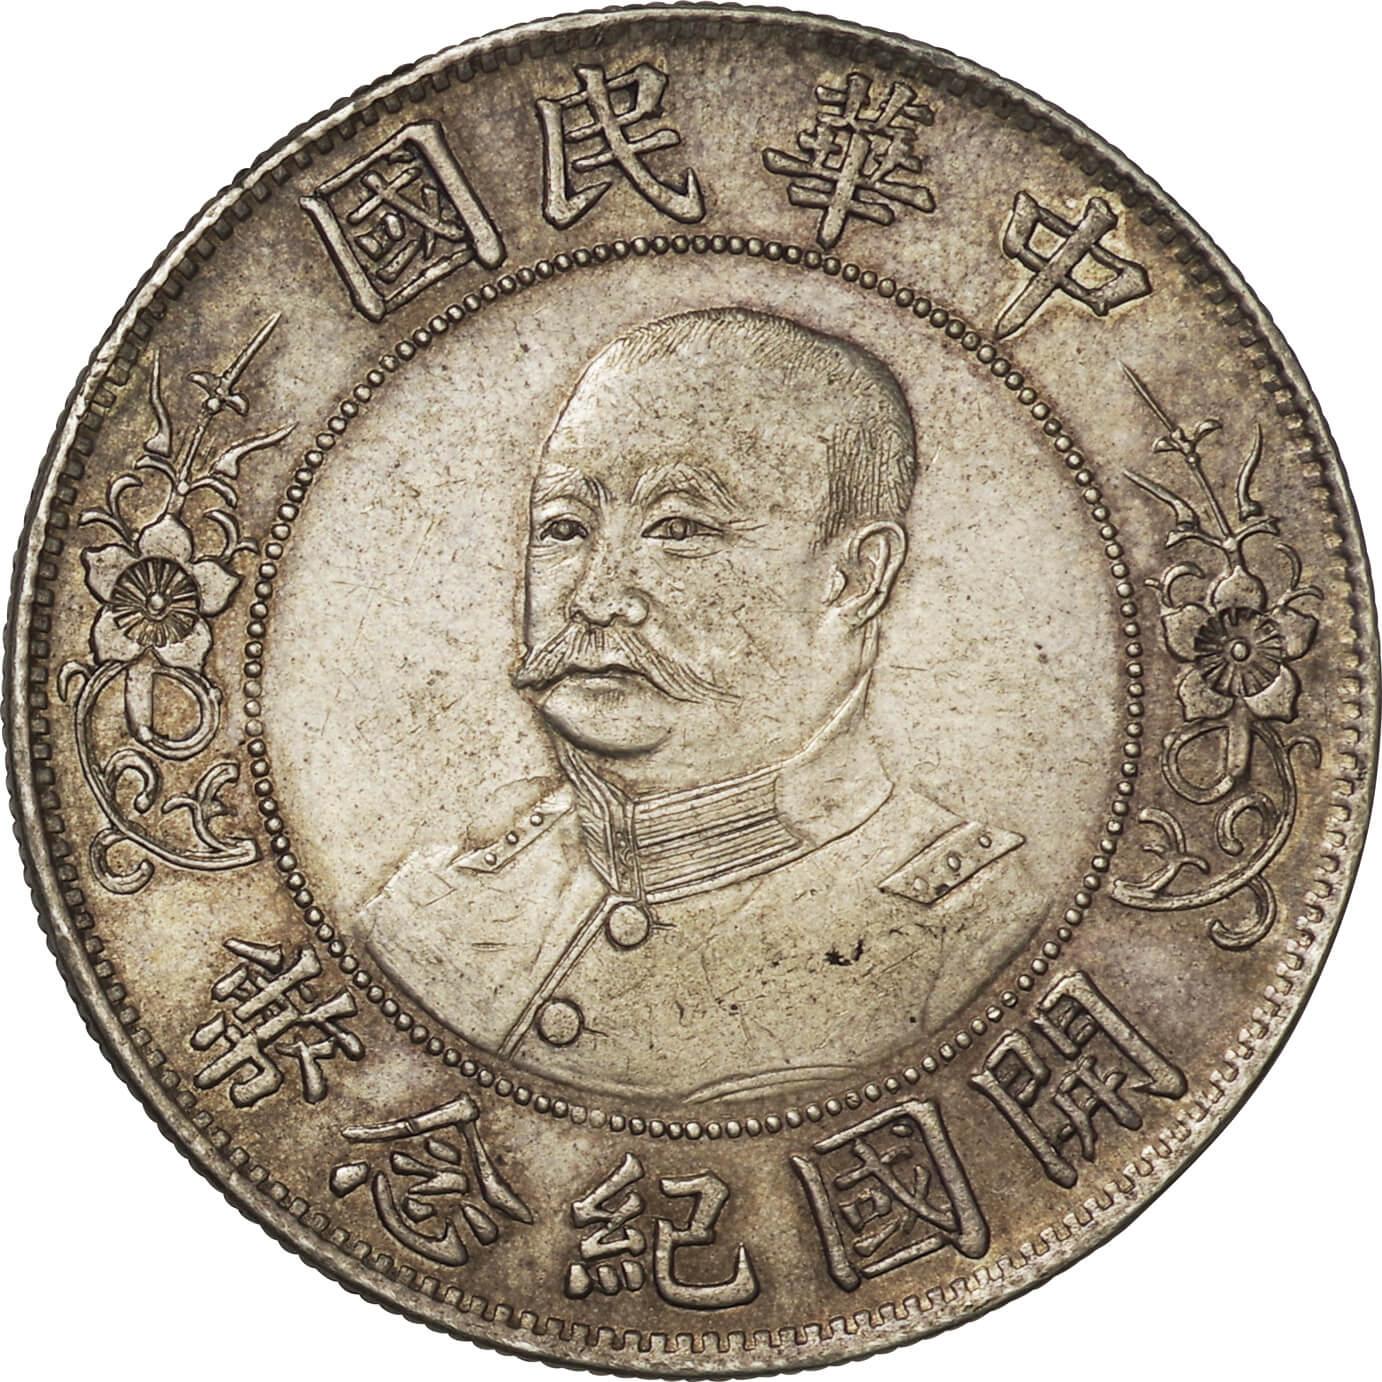 中華民国-ROC. 1912. Silver. ドル(Dollar). 美. VF. 中華民国 黎元洪